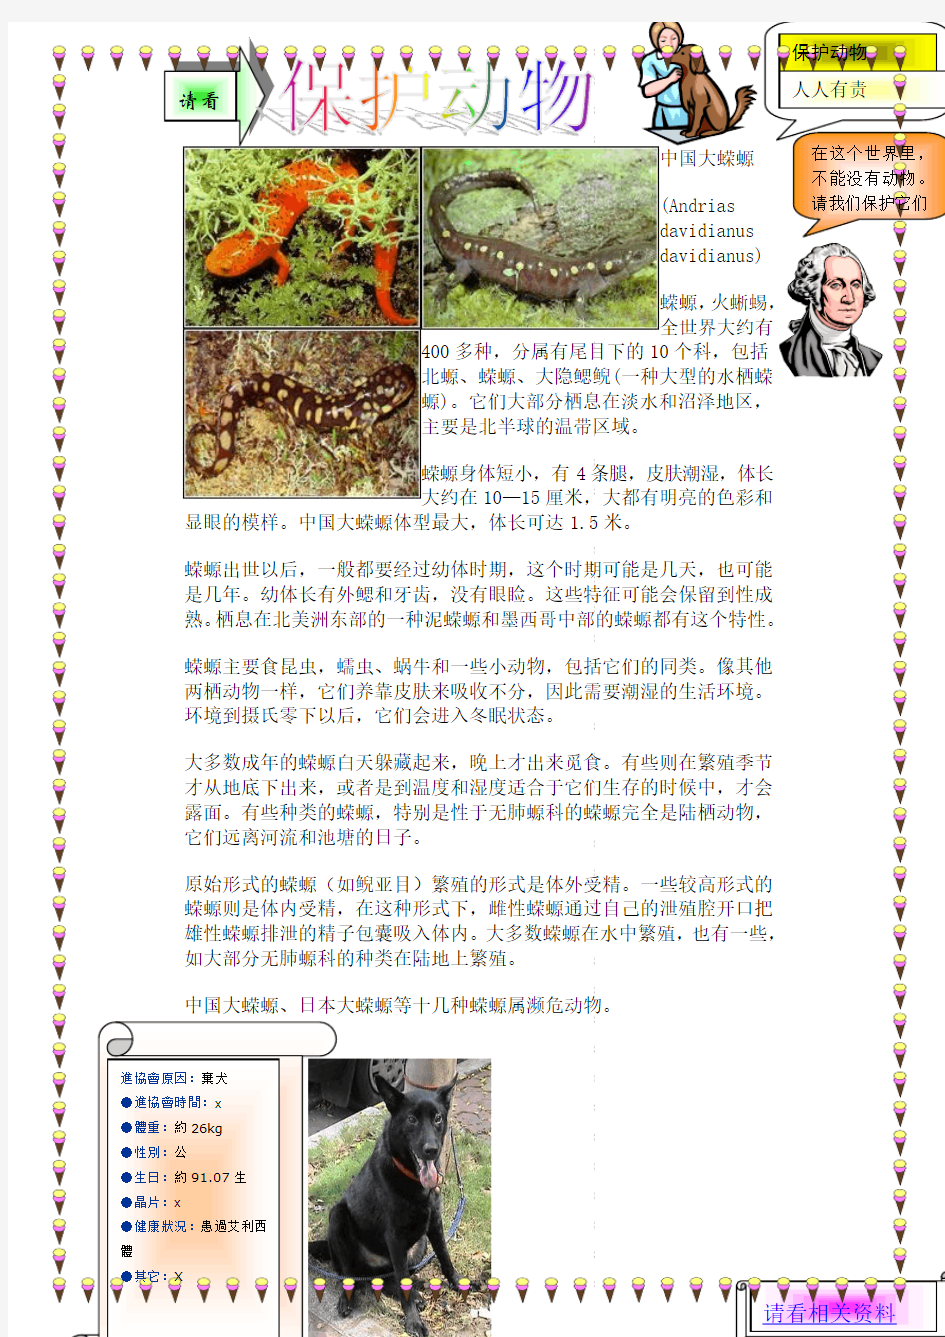 中国大蝾螈